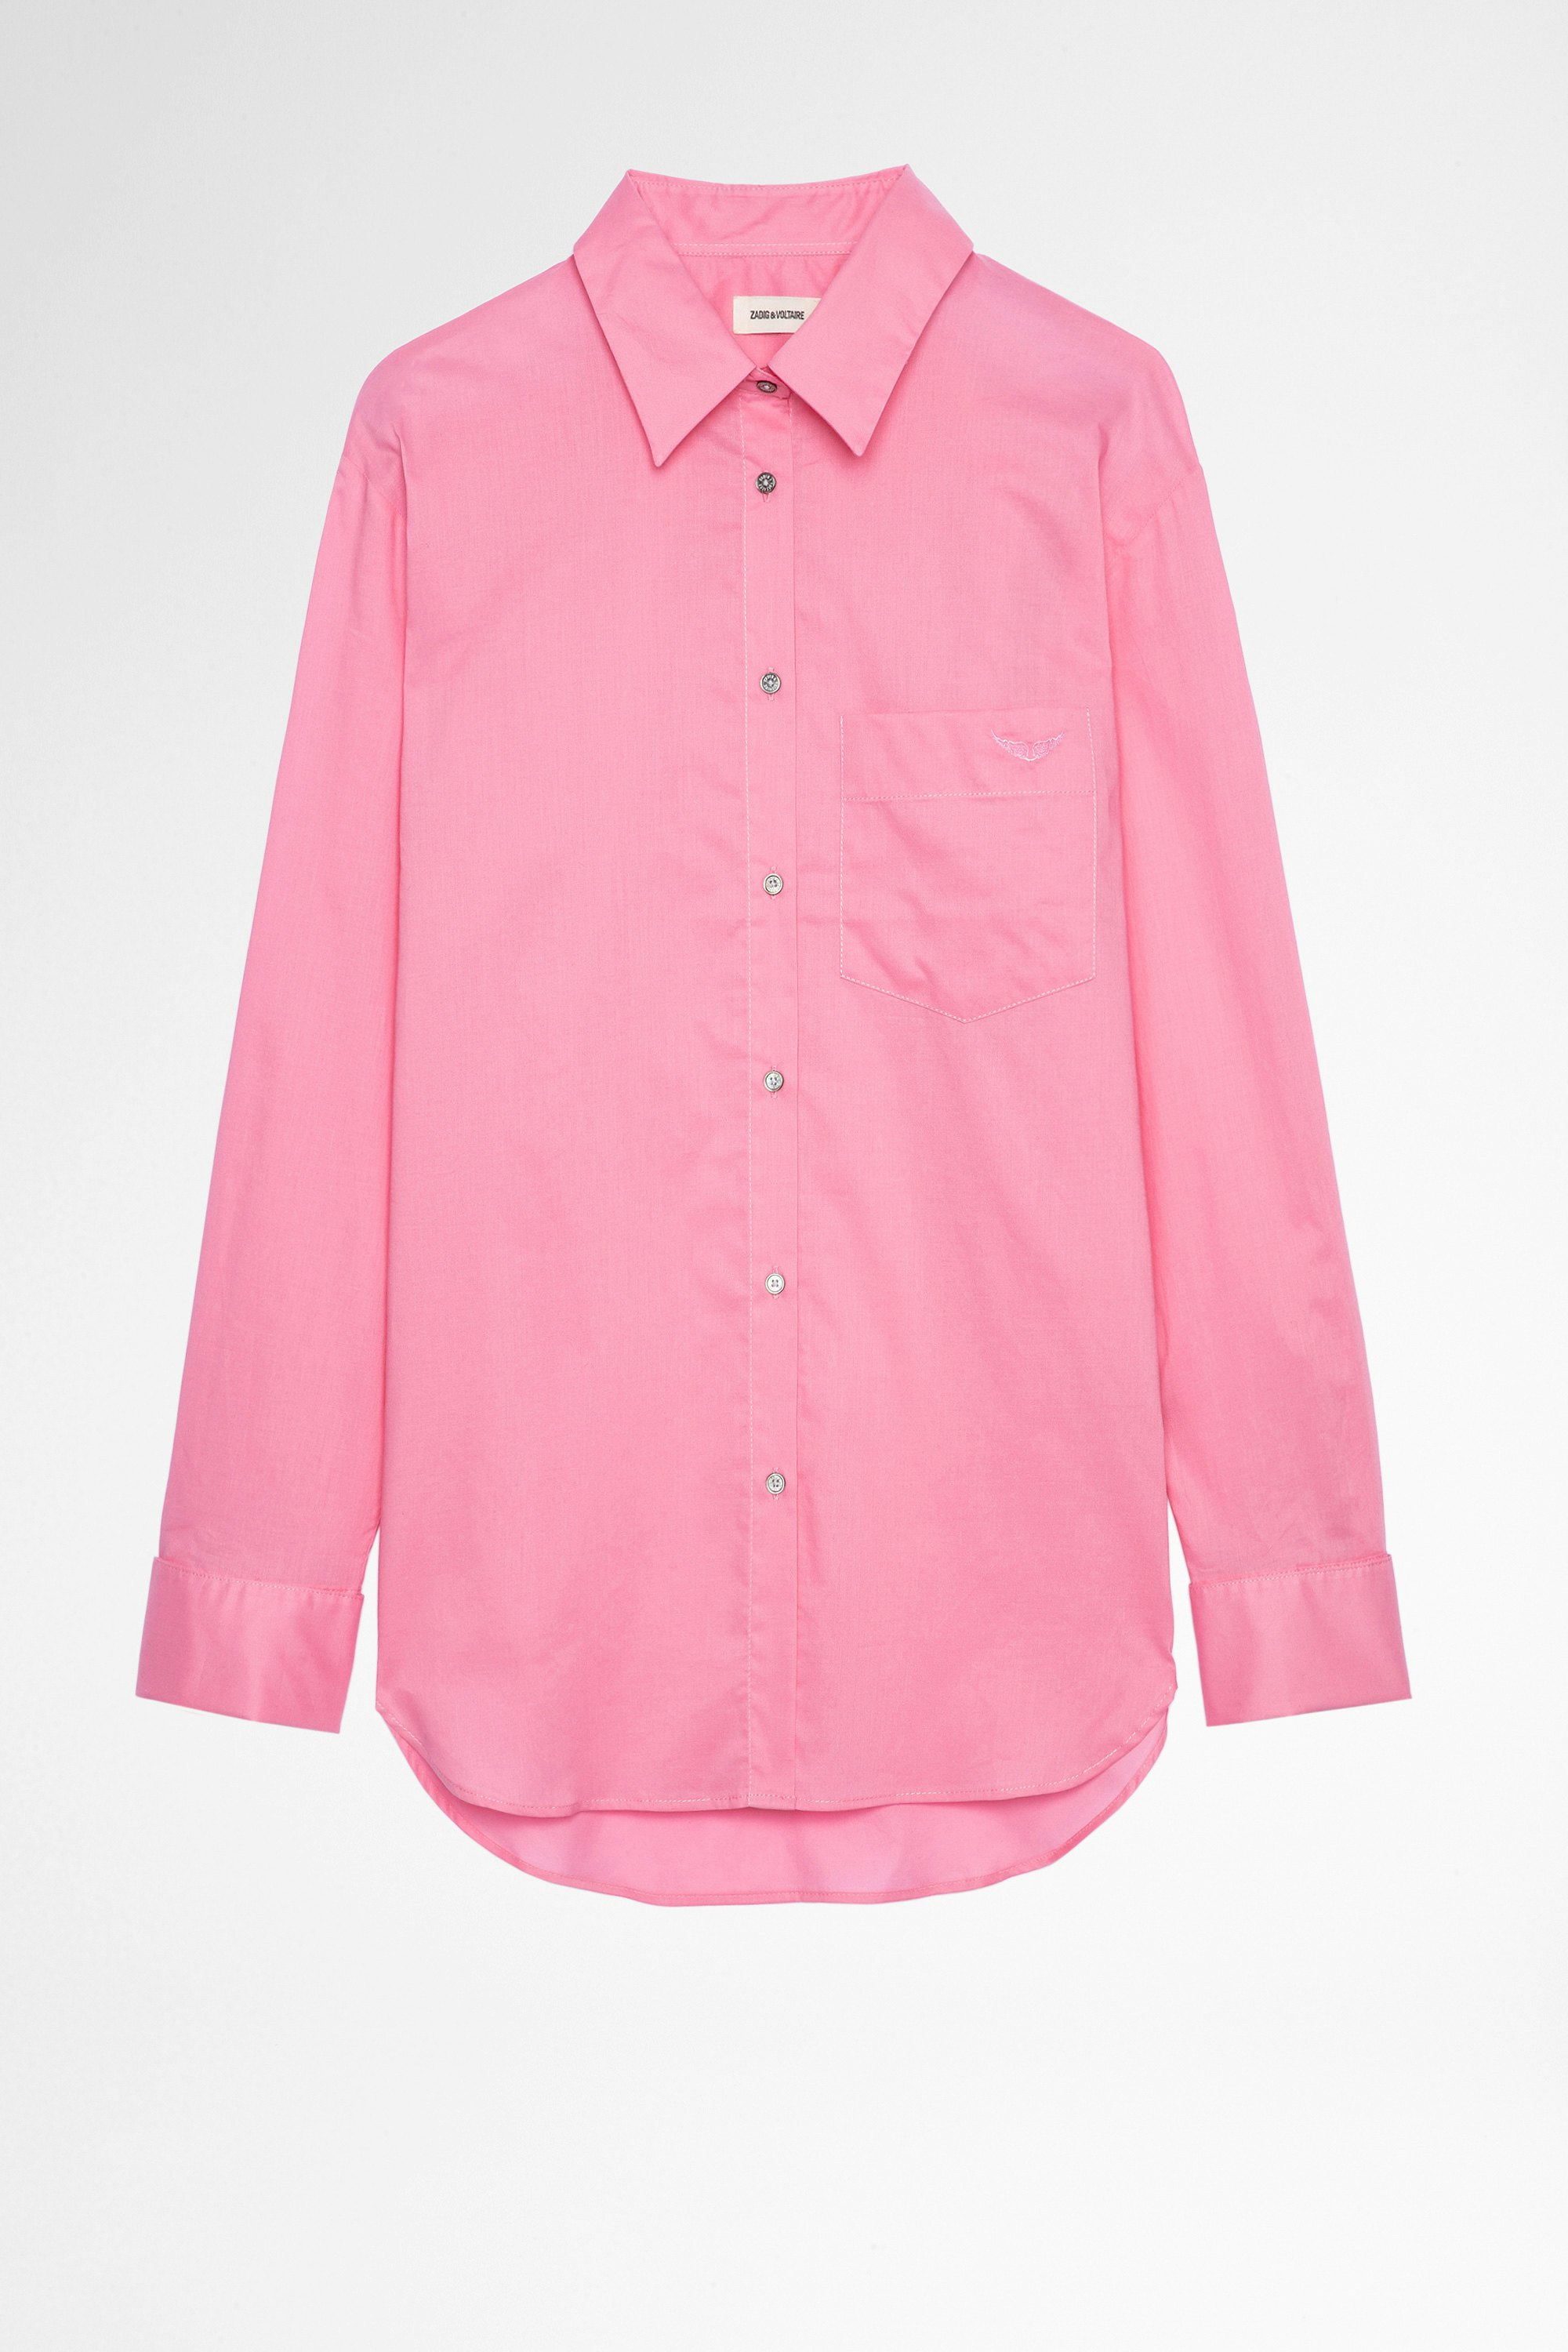 Bluse Morning Bluse aus rosafarbener Baumwolle. Hergestellt mit Fasern aus biologischem Anbau